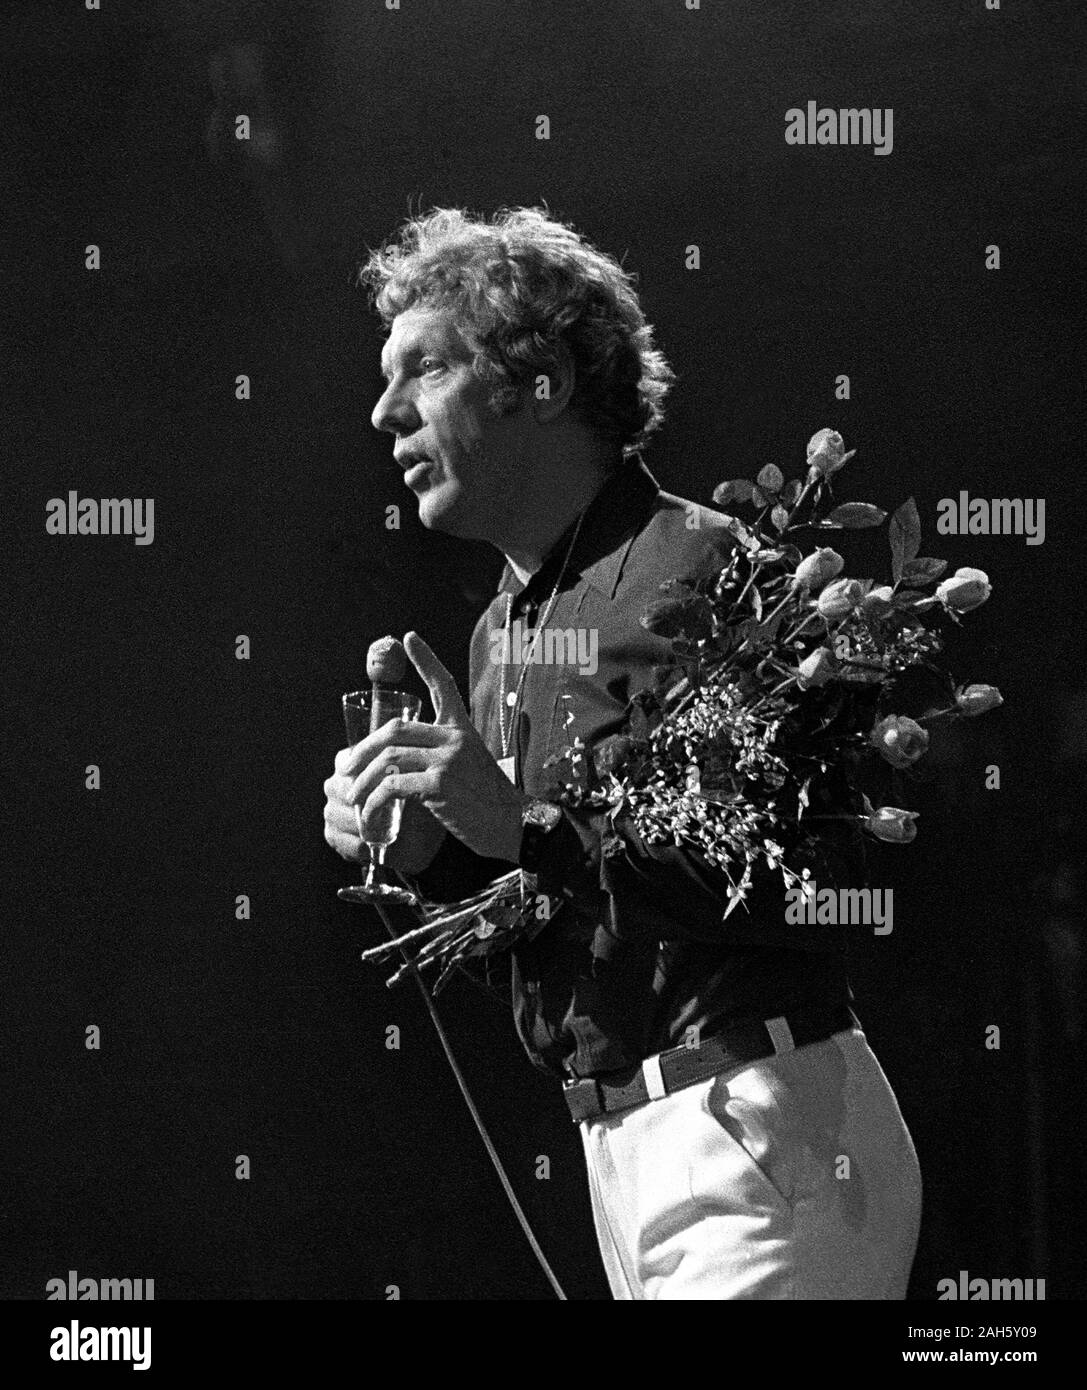 TAGE DANIELSSON auteur suédois et l'artiste sur scène avec fleurissent après show à Berns à Stockholm Banque D'Images